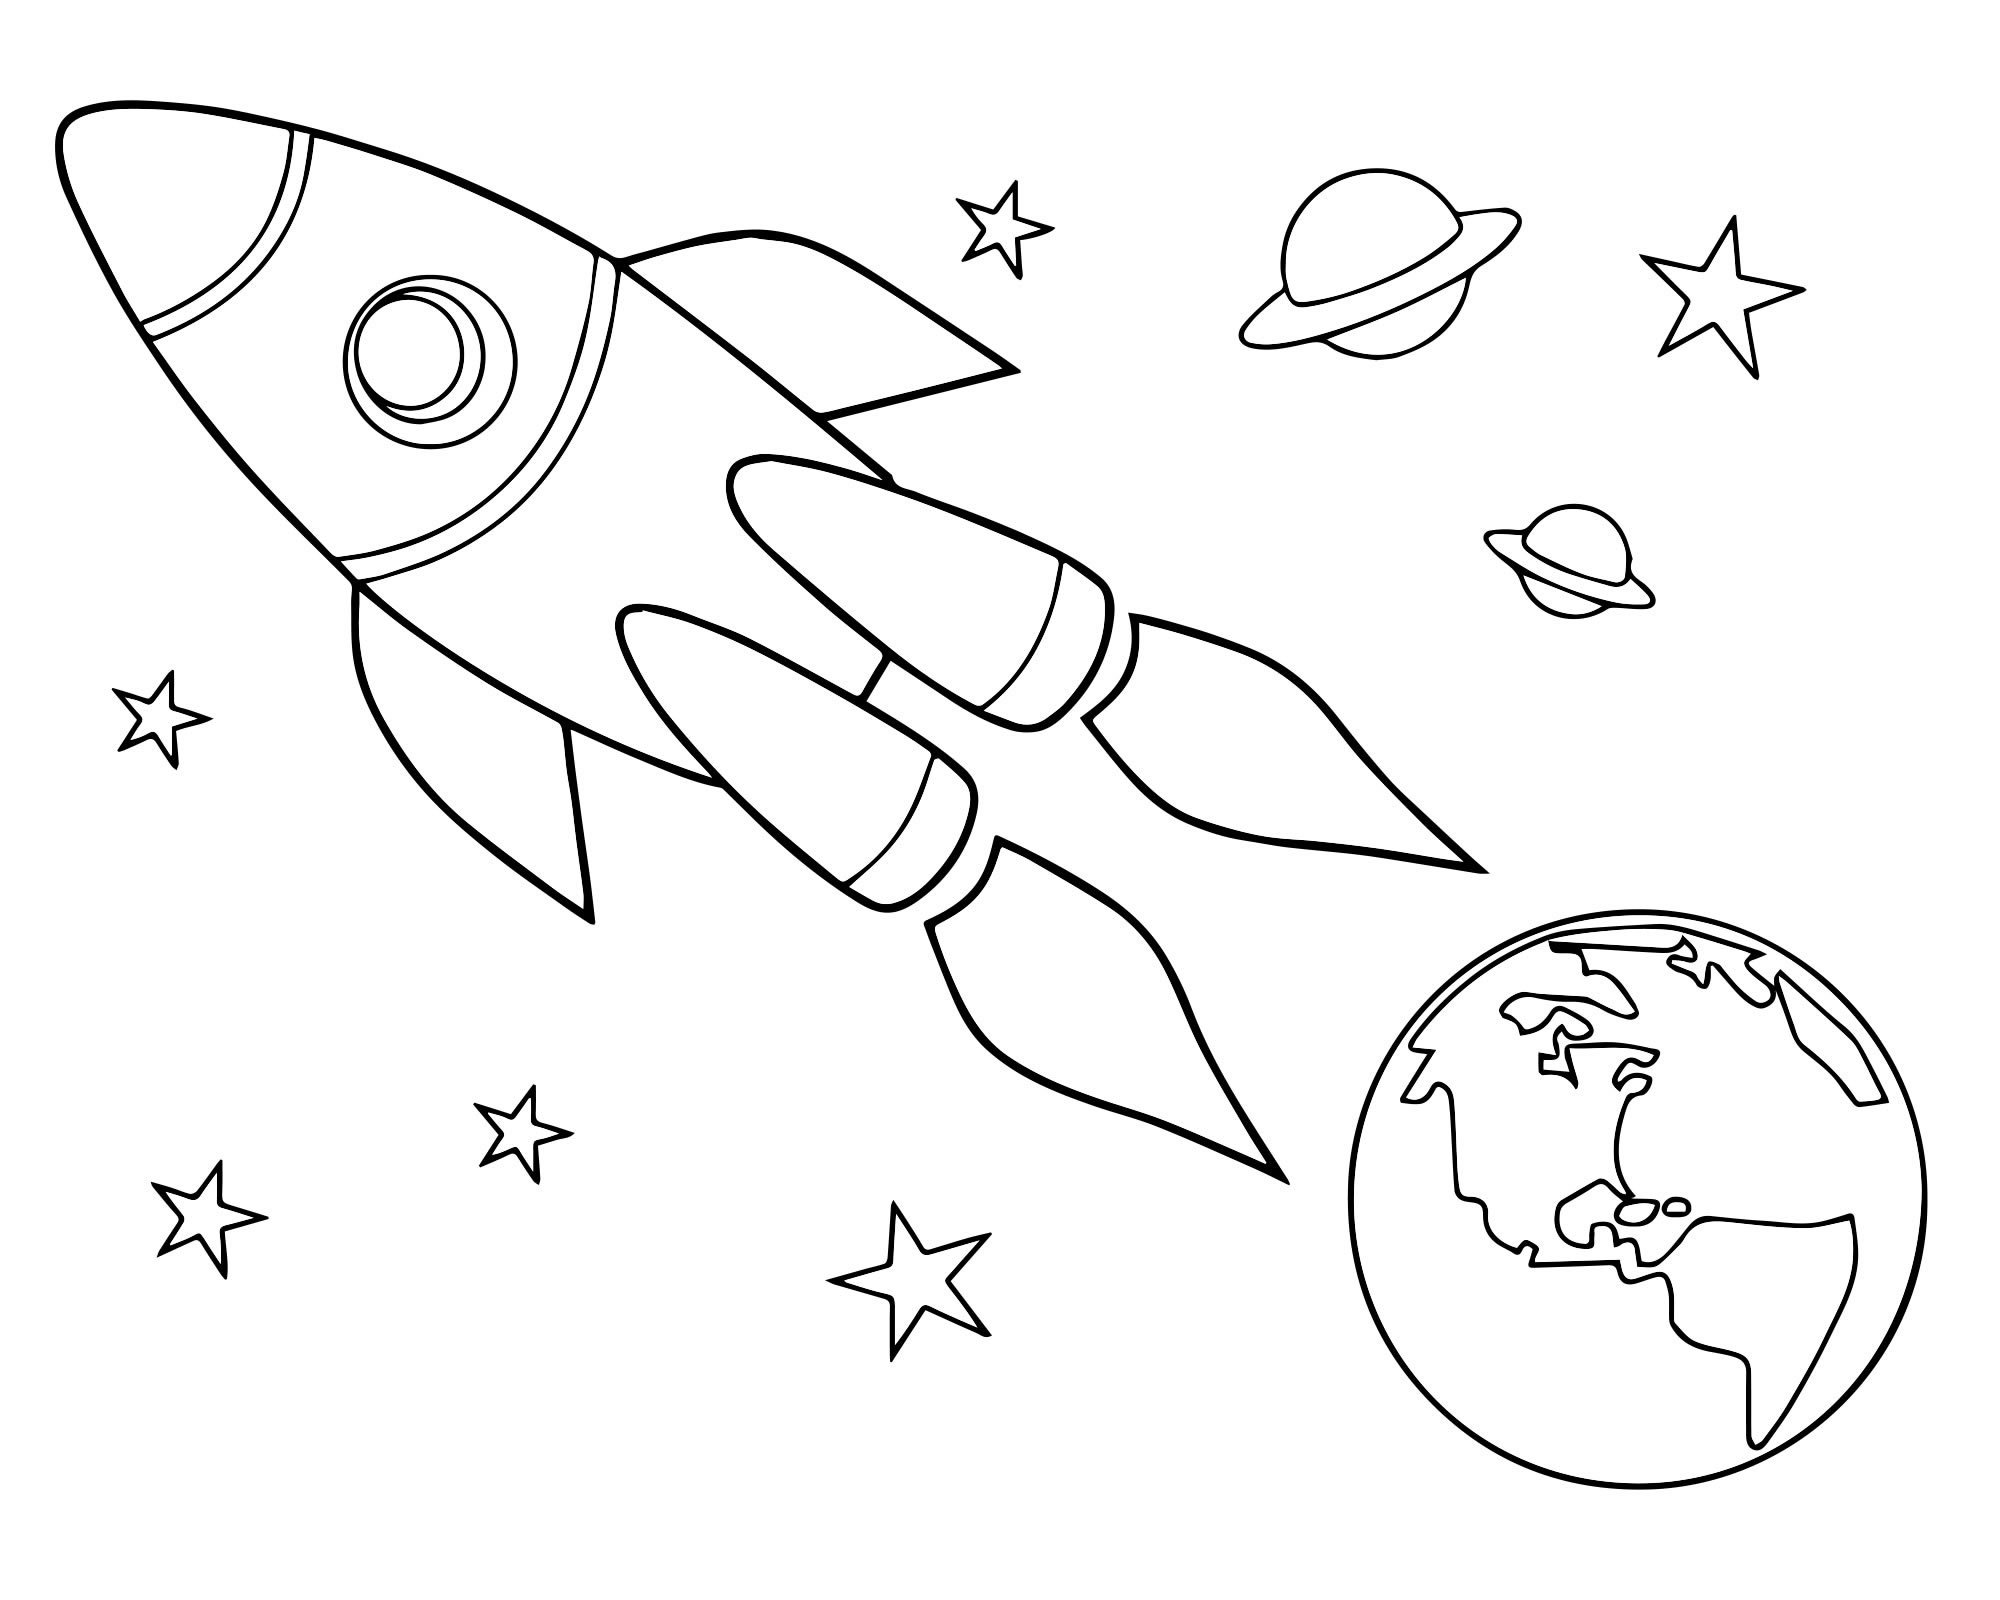 Космос раскраска для детей. Раскраска день космонавтики для детей. Трафареты на тему космоса для детей. Раскраска для малышей. Космос. Рисунки для срисовки ко дню космонавтики